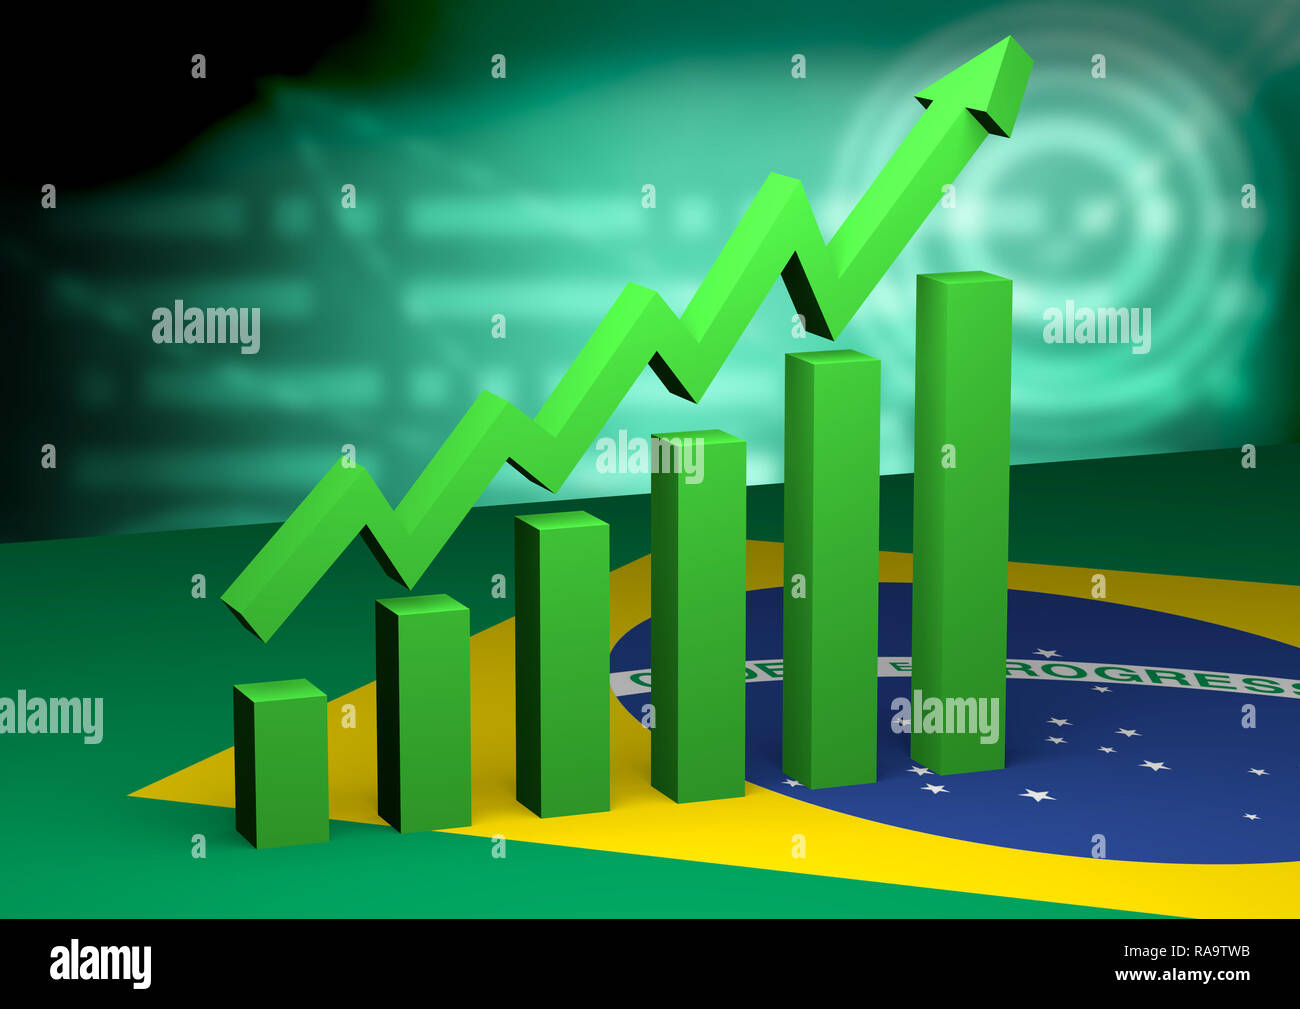 Экономика страны бразилии. Рост экономики. Экономический рост Бразилии. Финансы Бразилии. Рост ВВП Бразилии.